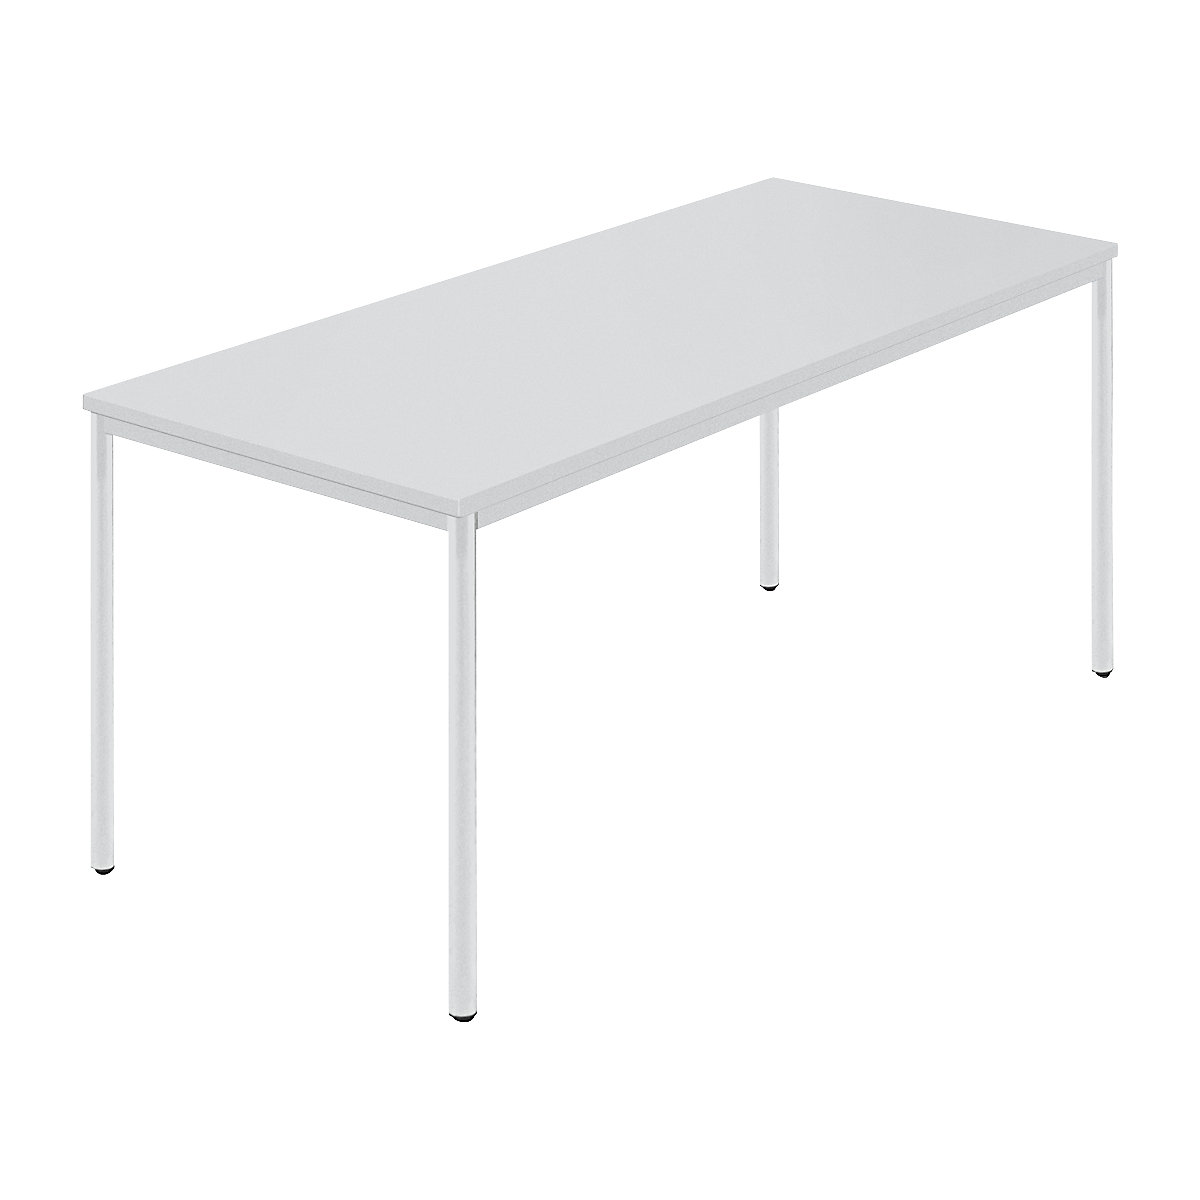 Pravokotna miza, okrogla cev s premazom, ŠxG 1600 x 800 mm, siva/siva-6